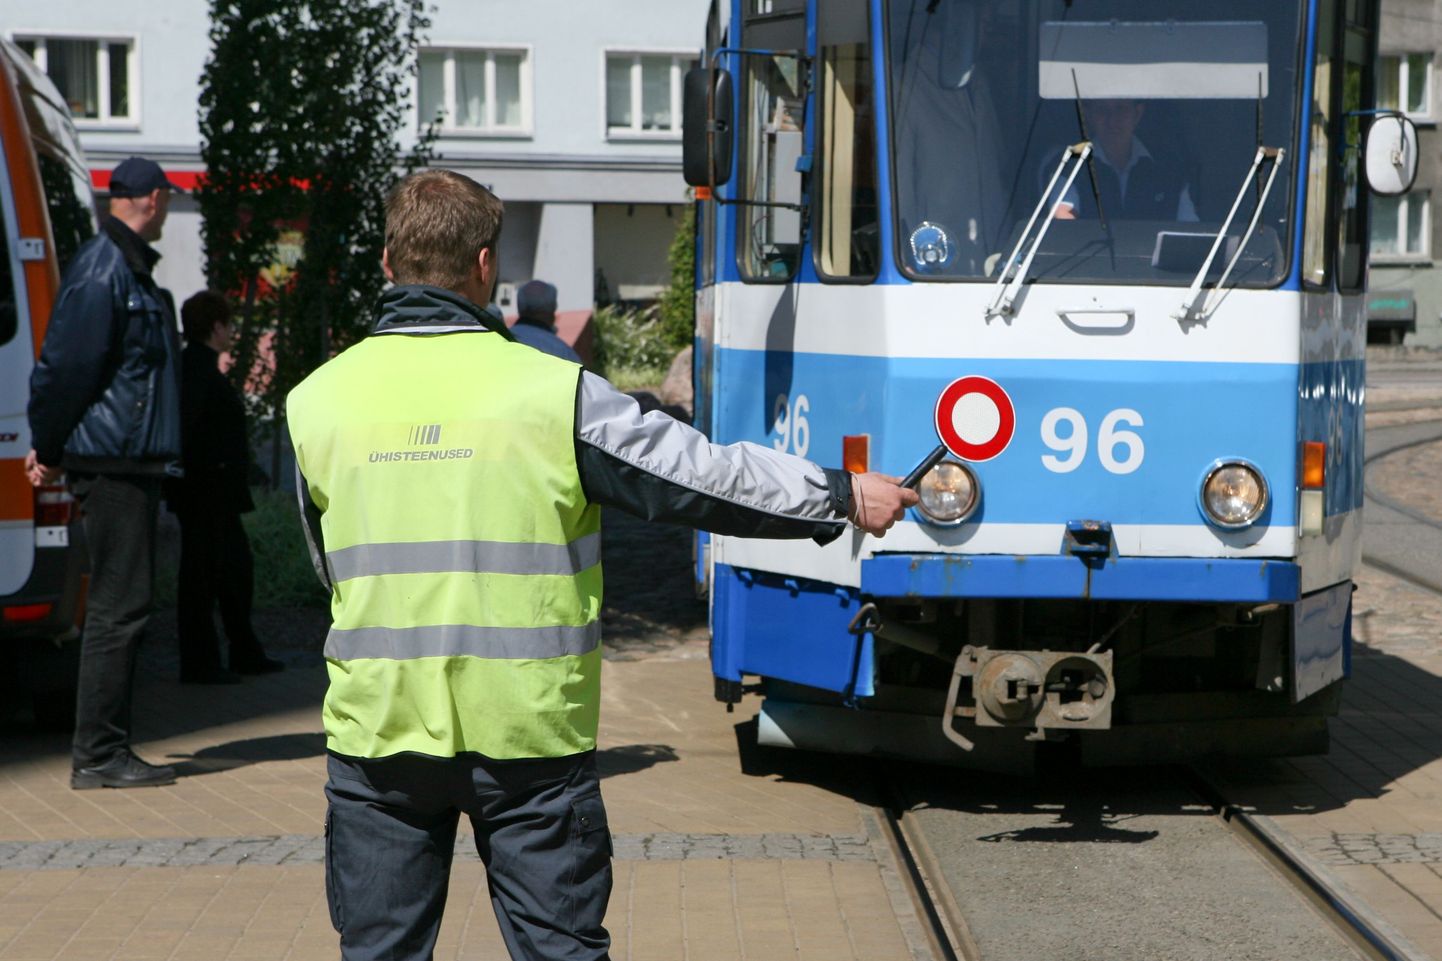 Муниципальная полиция останавливает трамвай для проверки проездных билетов.